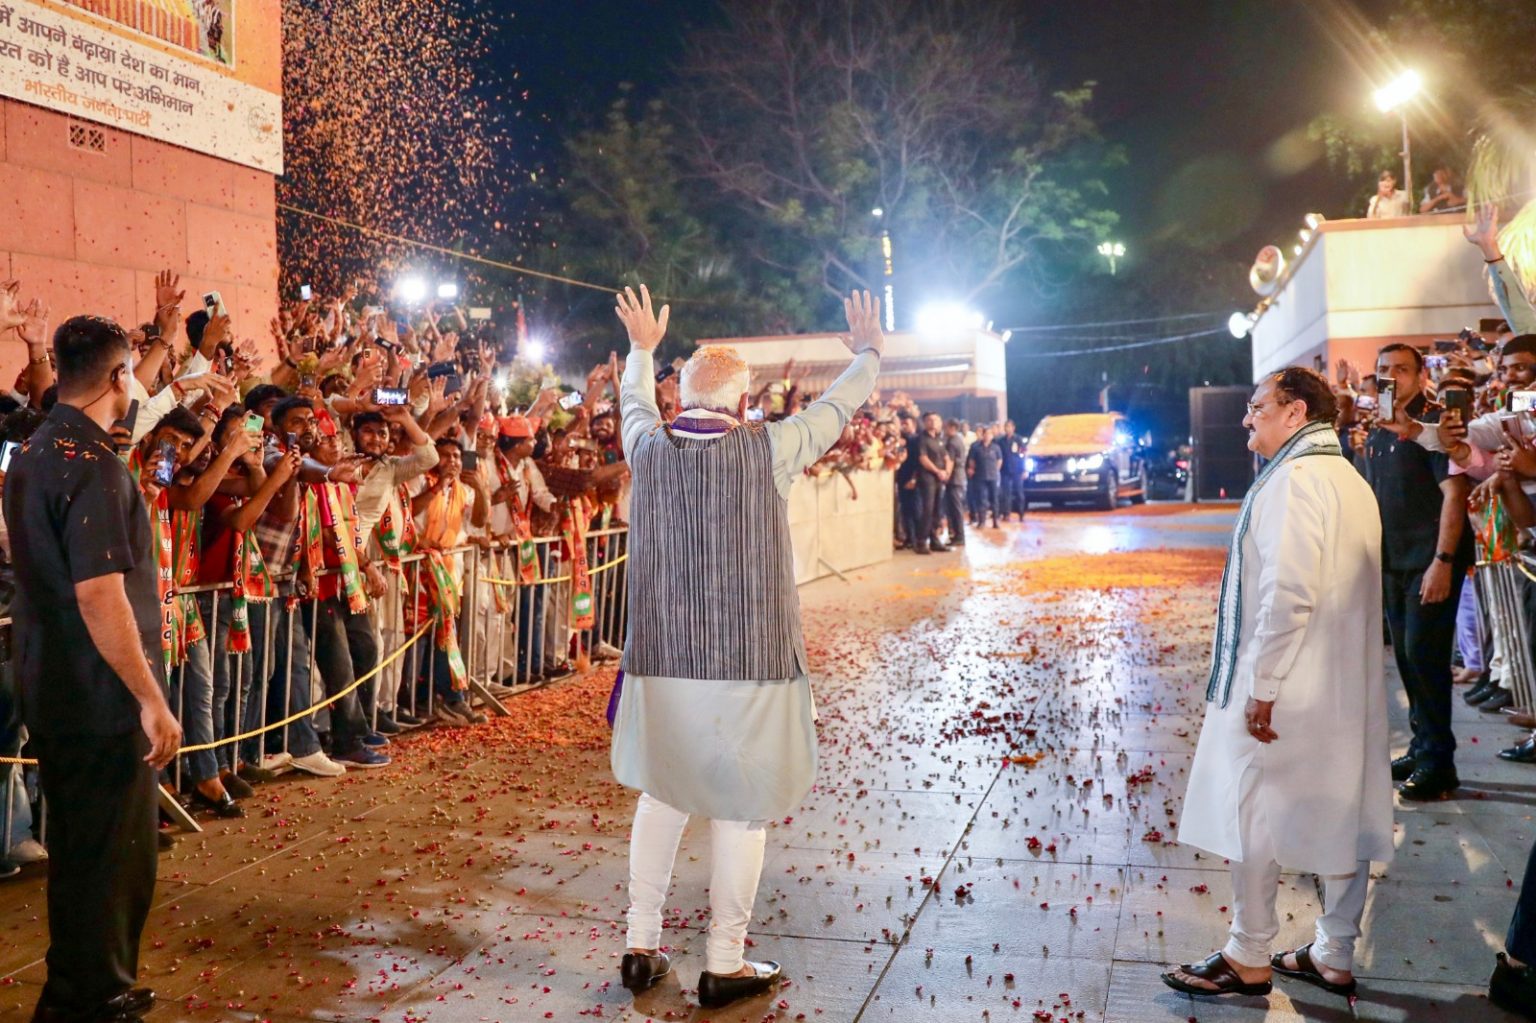 گزشتہ 13 ستمبر کو بی جے پی ہیڈکوارٹر پہنچے وزیر اعظم نریندر مودی پر پھول برسائے گئے۔ (تصویر بہ شکریہ: ٹوئٹر/بی جے پی)